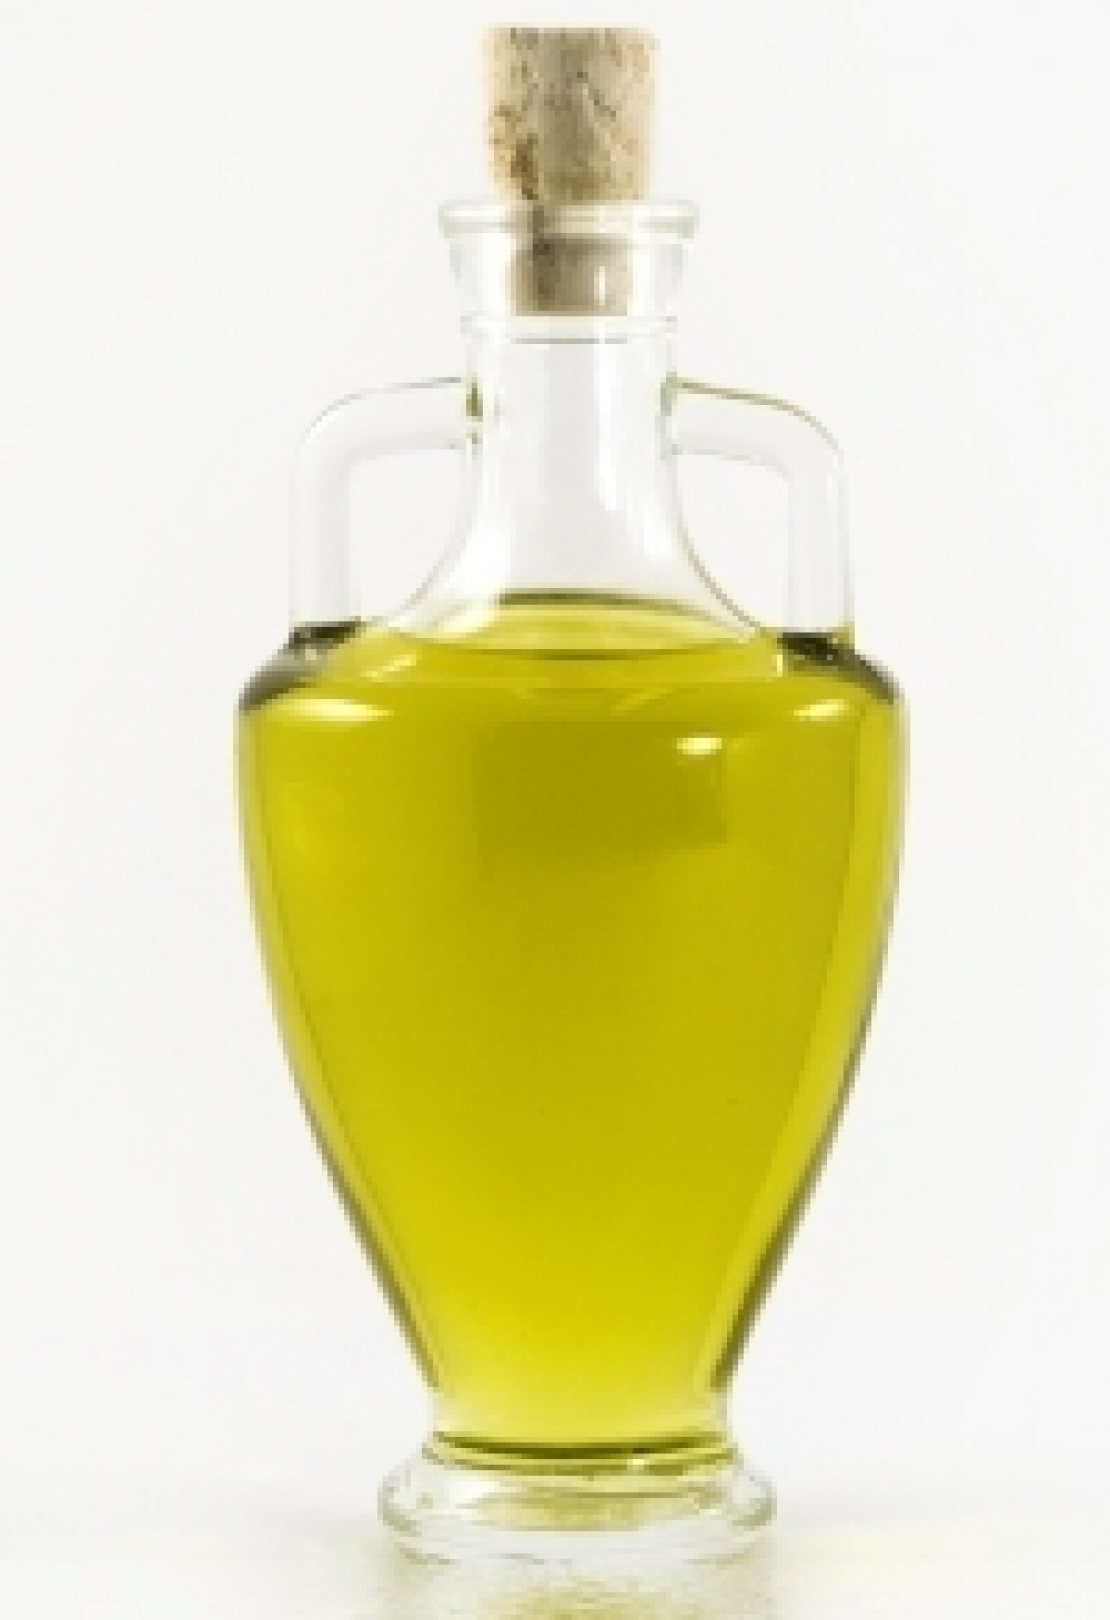 Perchè dovrei comprare il mio olio extra vergine d'oliva?